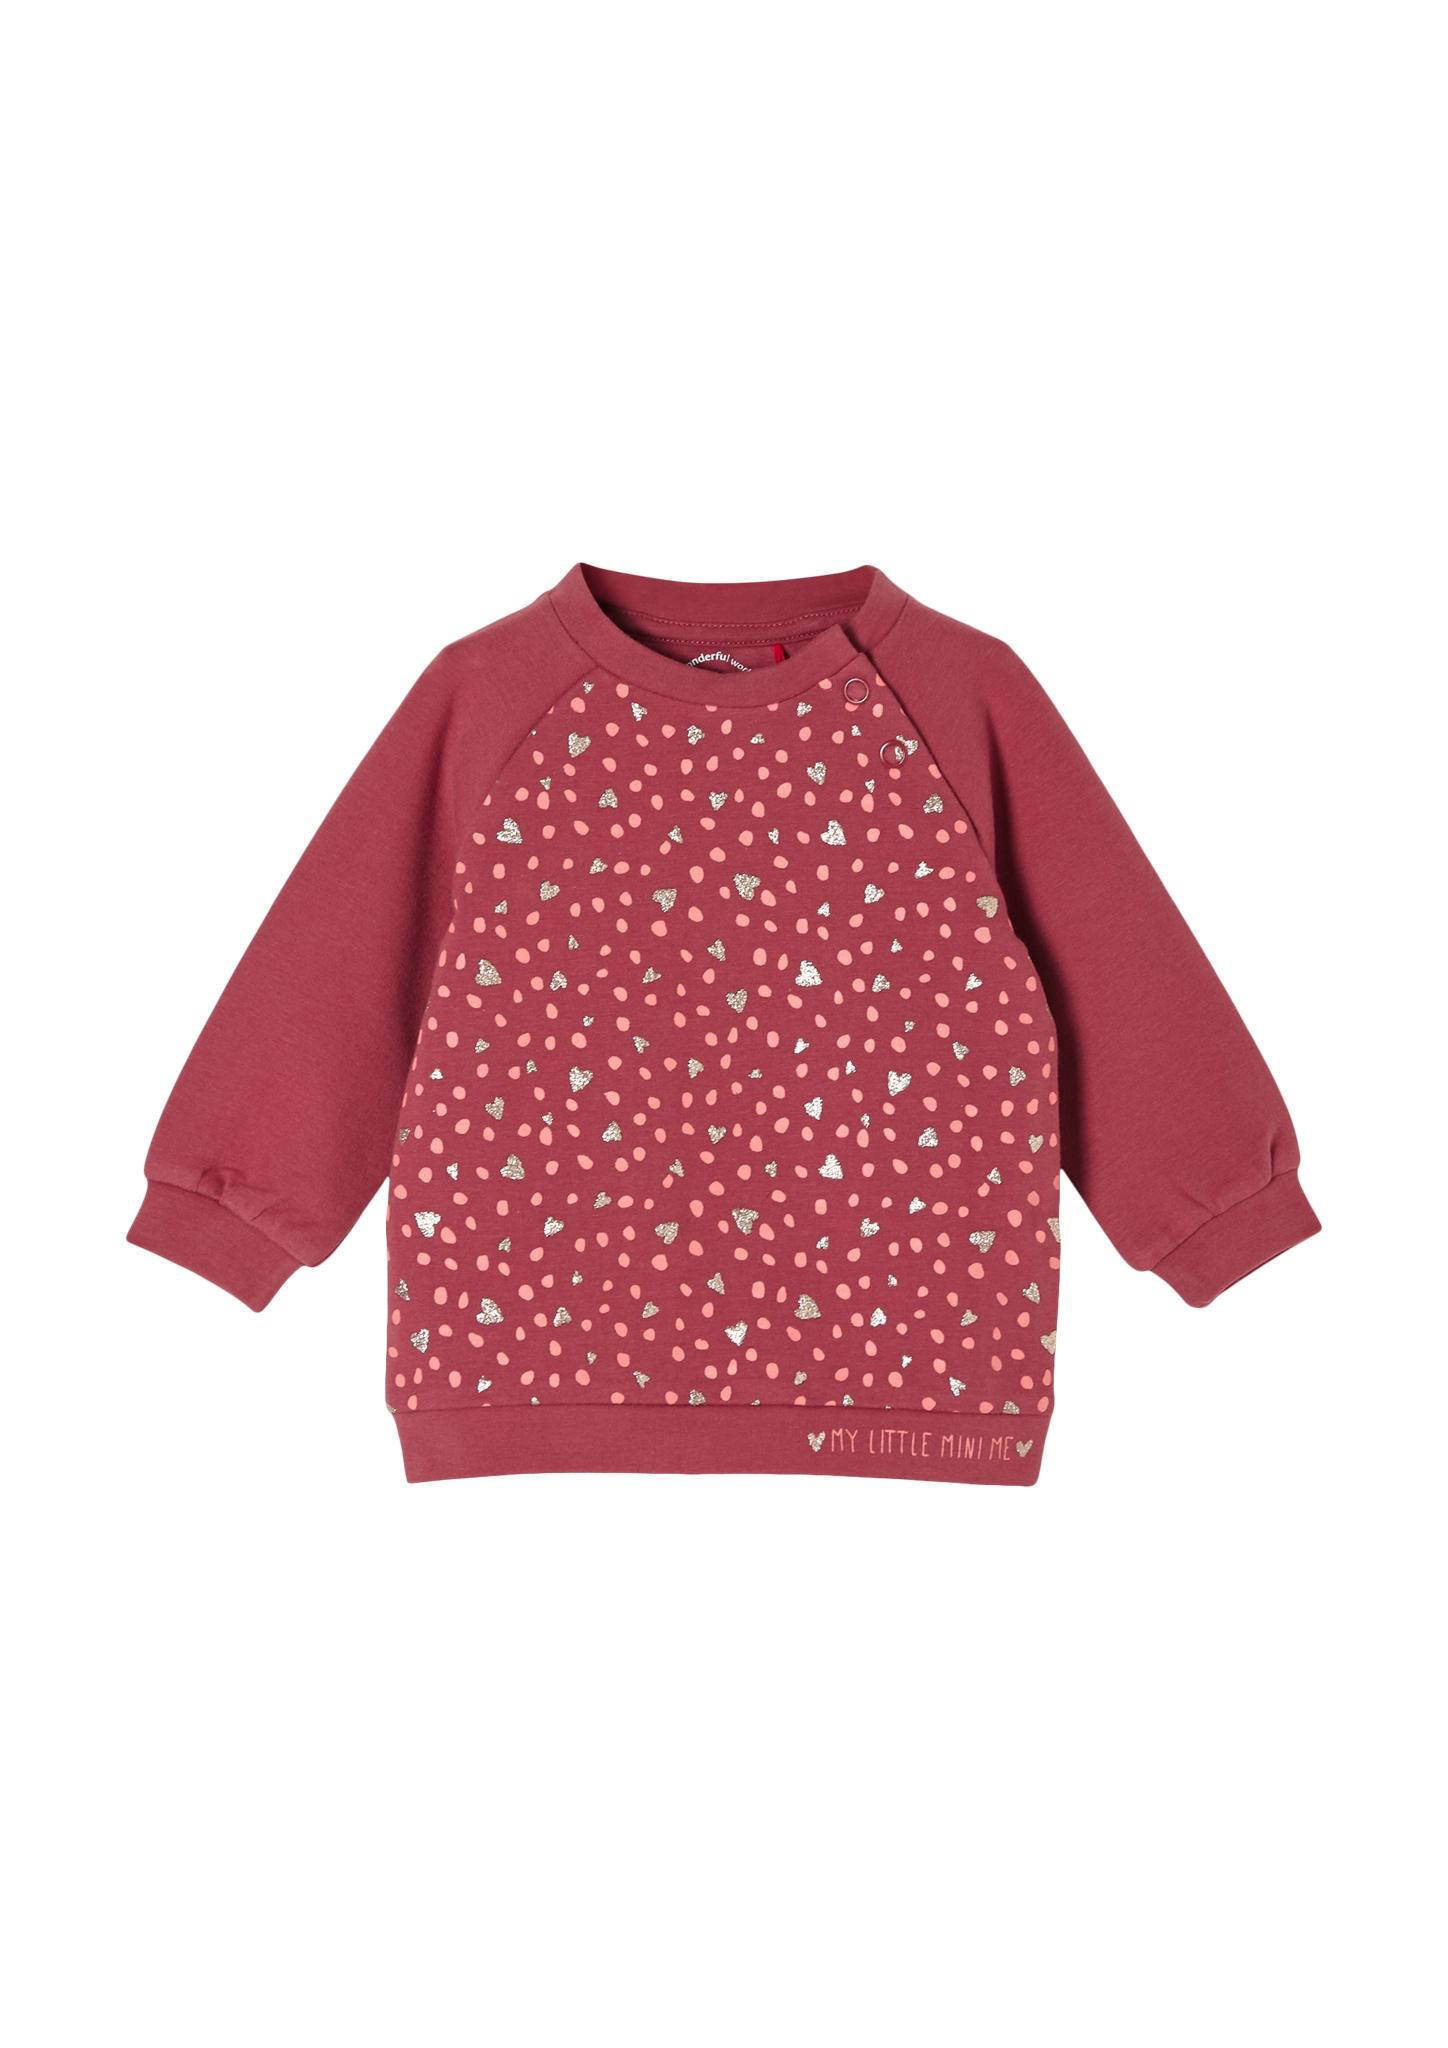 S.Oliver baby sweater met hartjes en glitters rood/goud online kopen